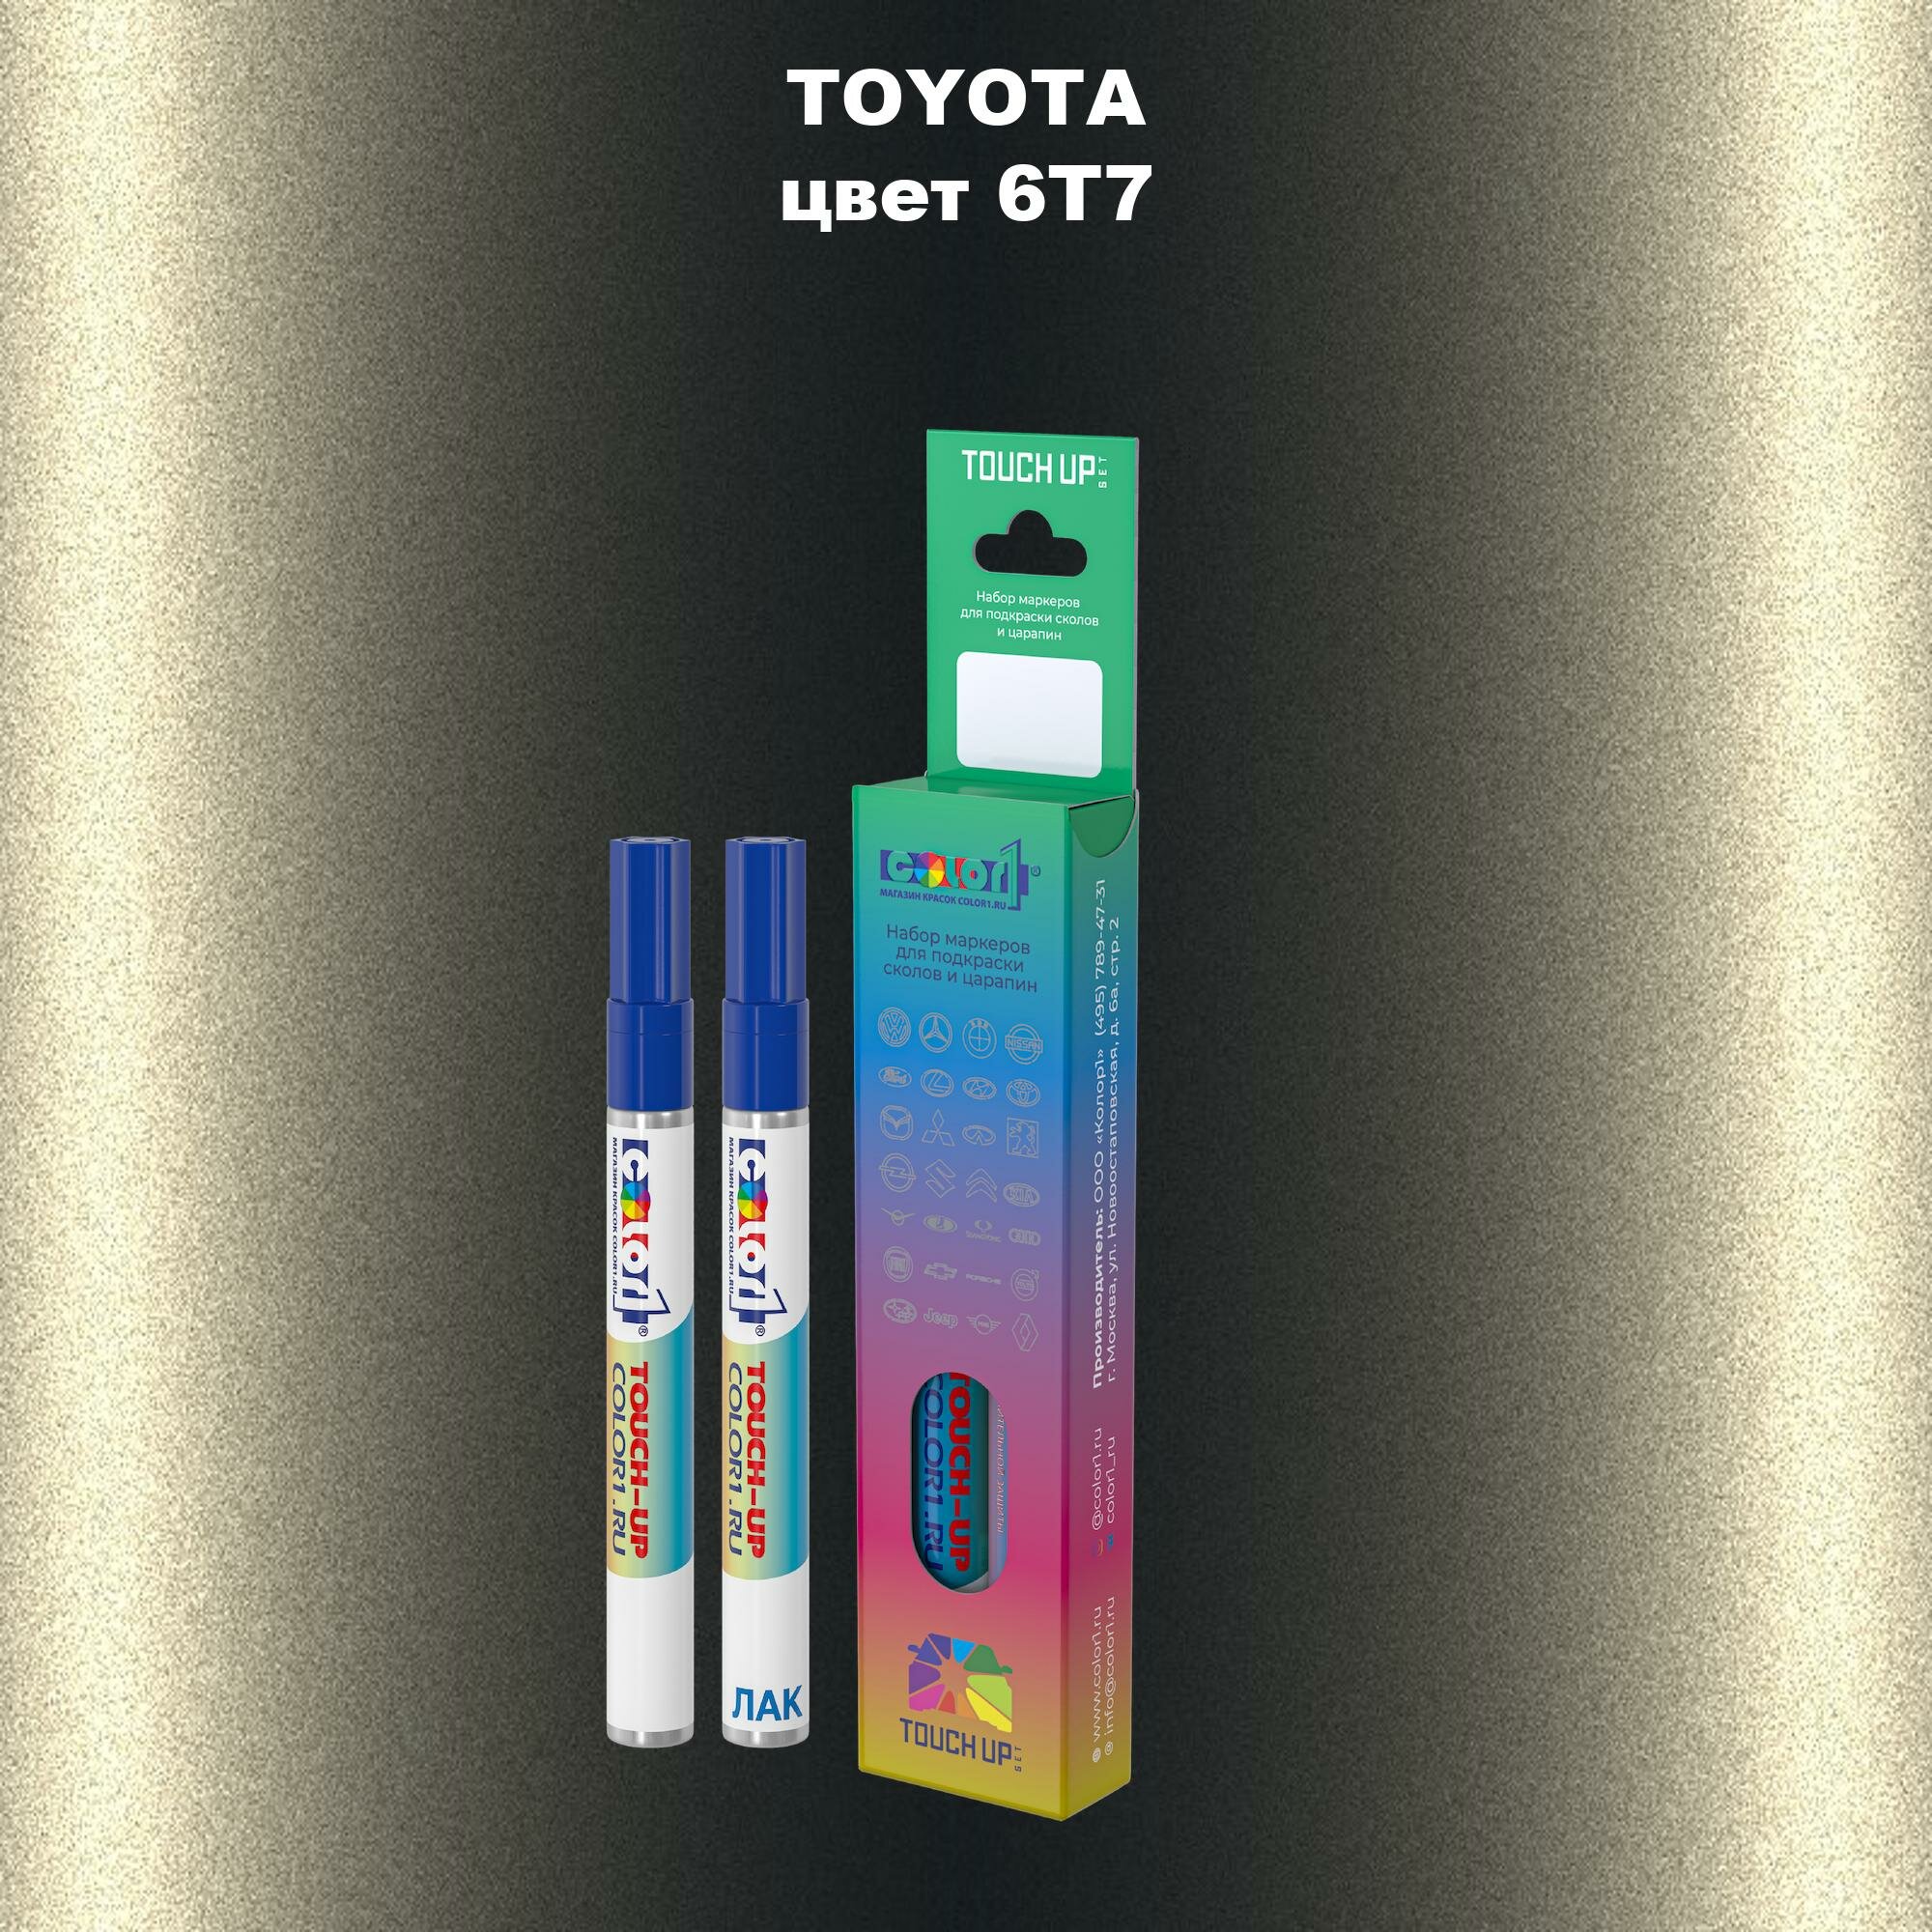 Набор маркеров (маркер с краской и маркер с лаком) для закраски сколов и царапин на автомобиле TOYOTA, цвет 6T7 - OLIVE, CYPRES PEARL